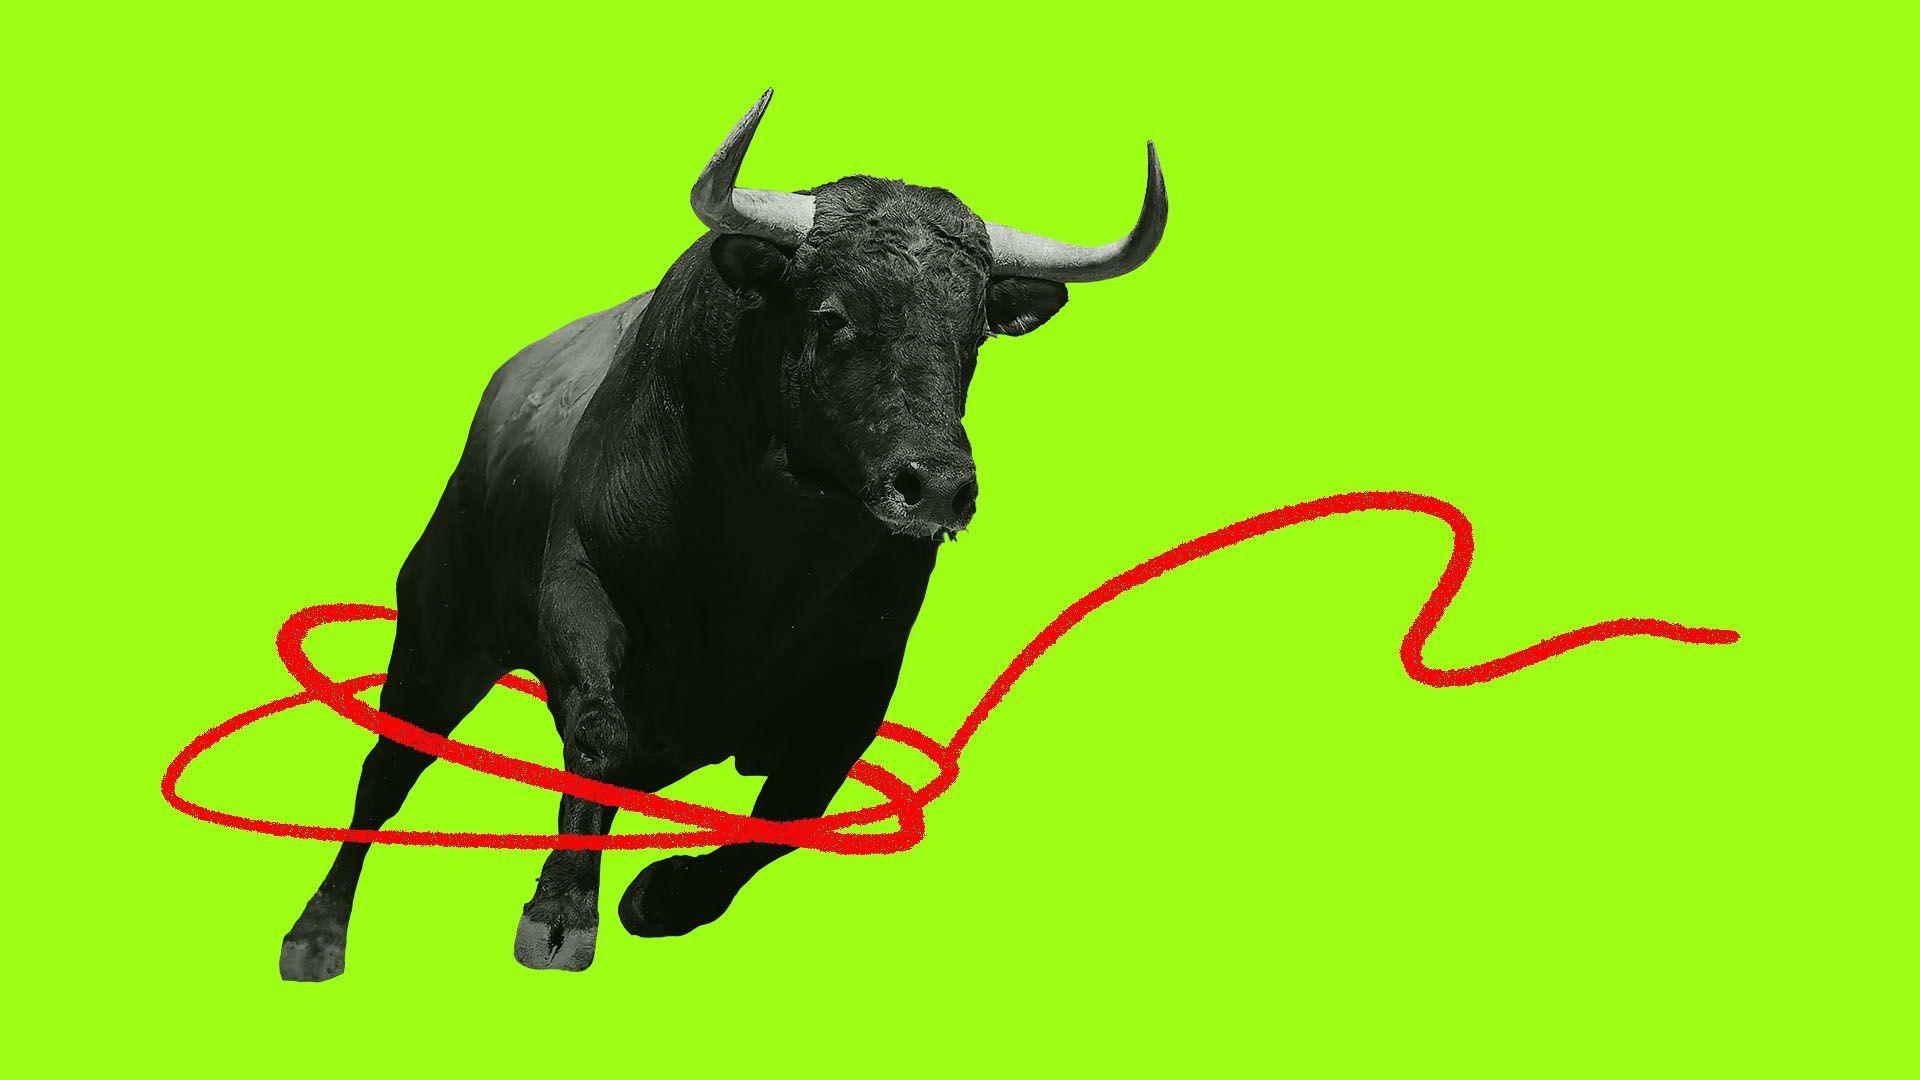 Illustration of a financial bull 